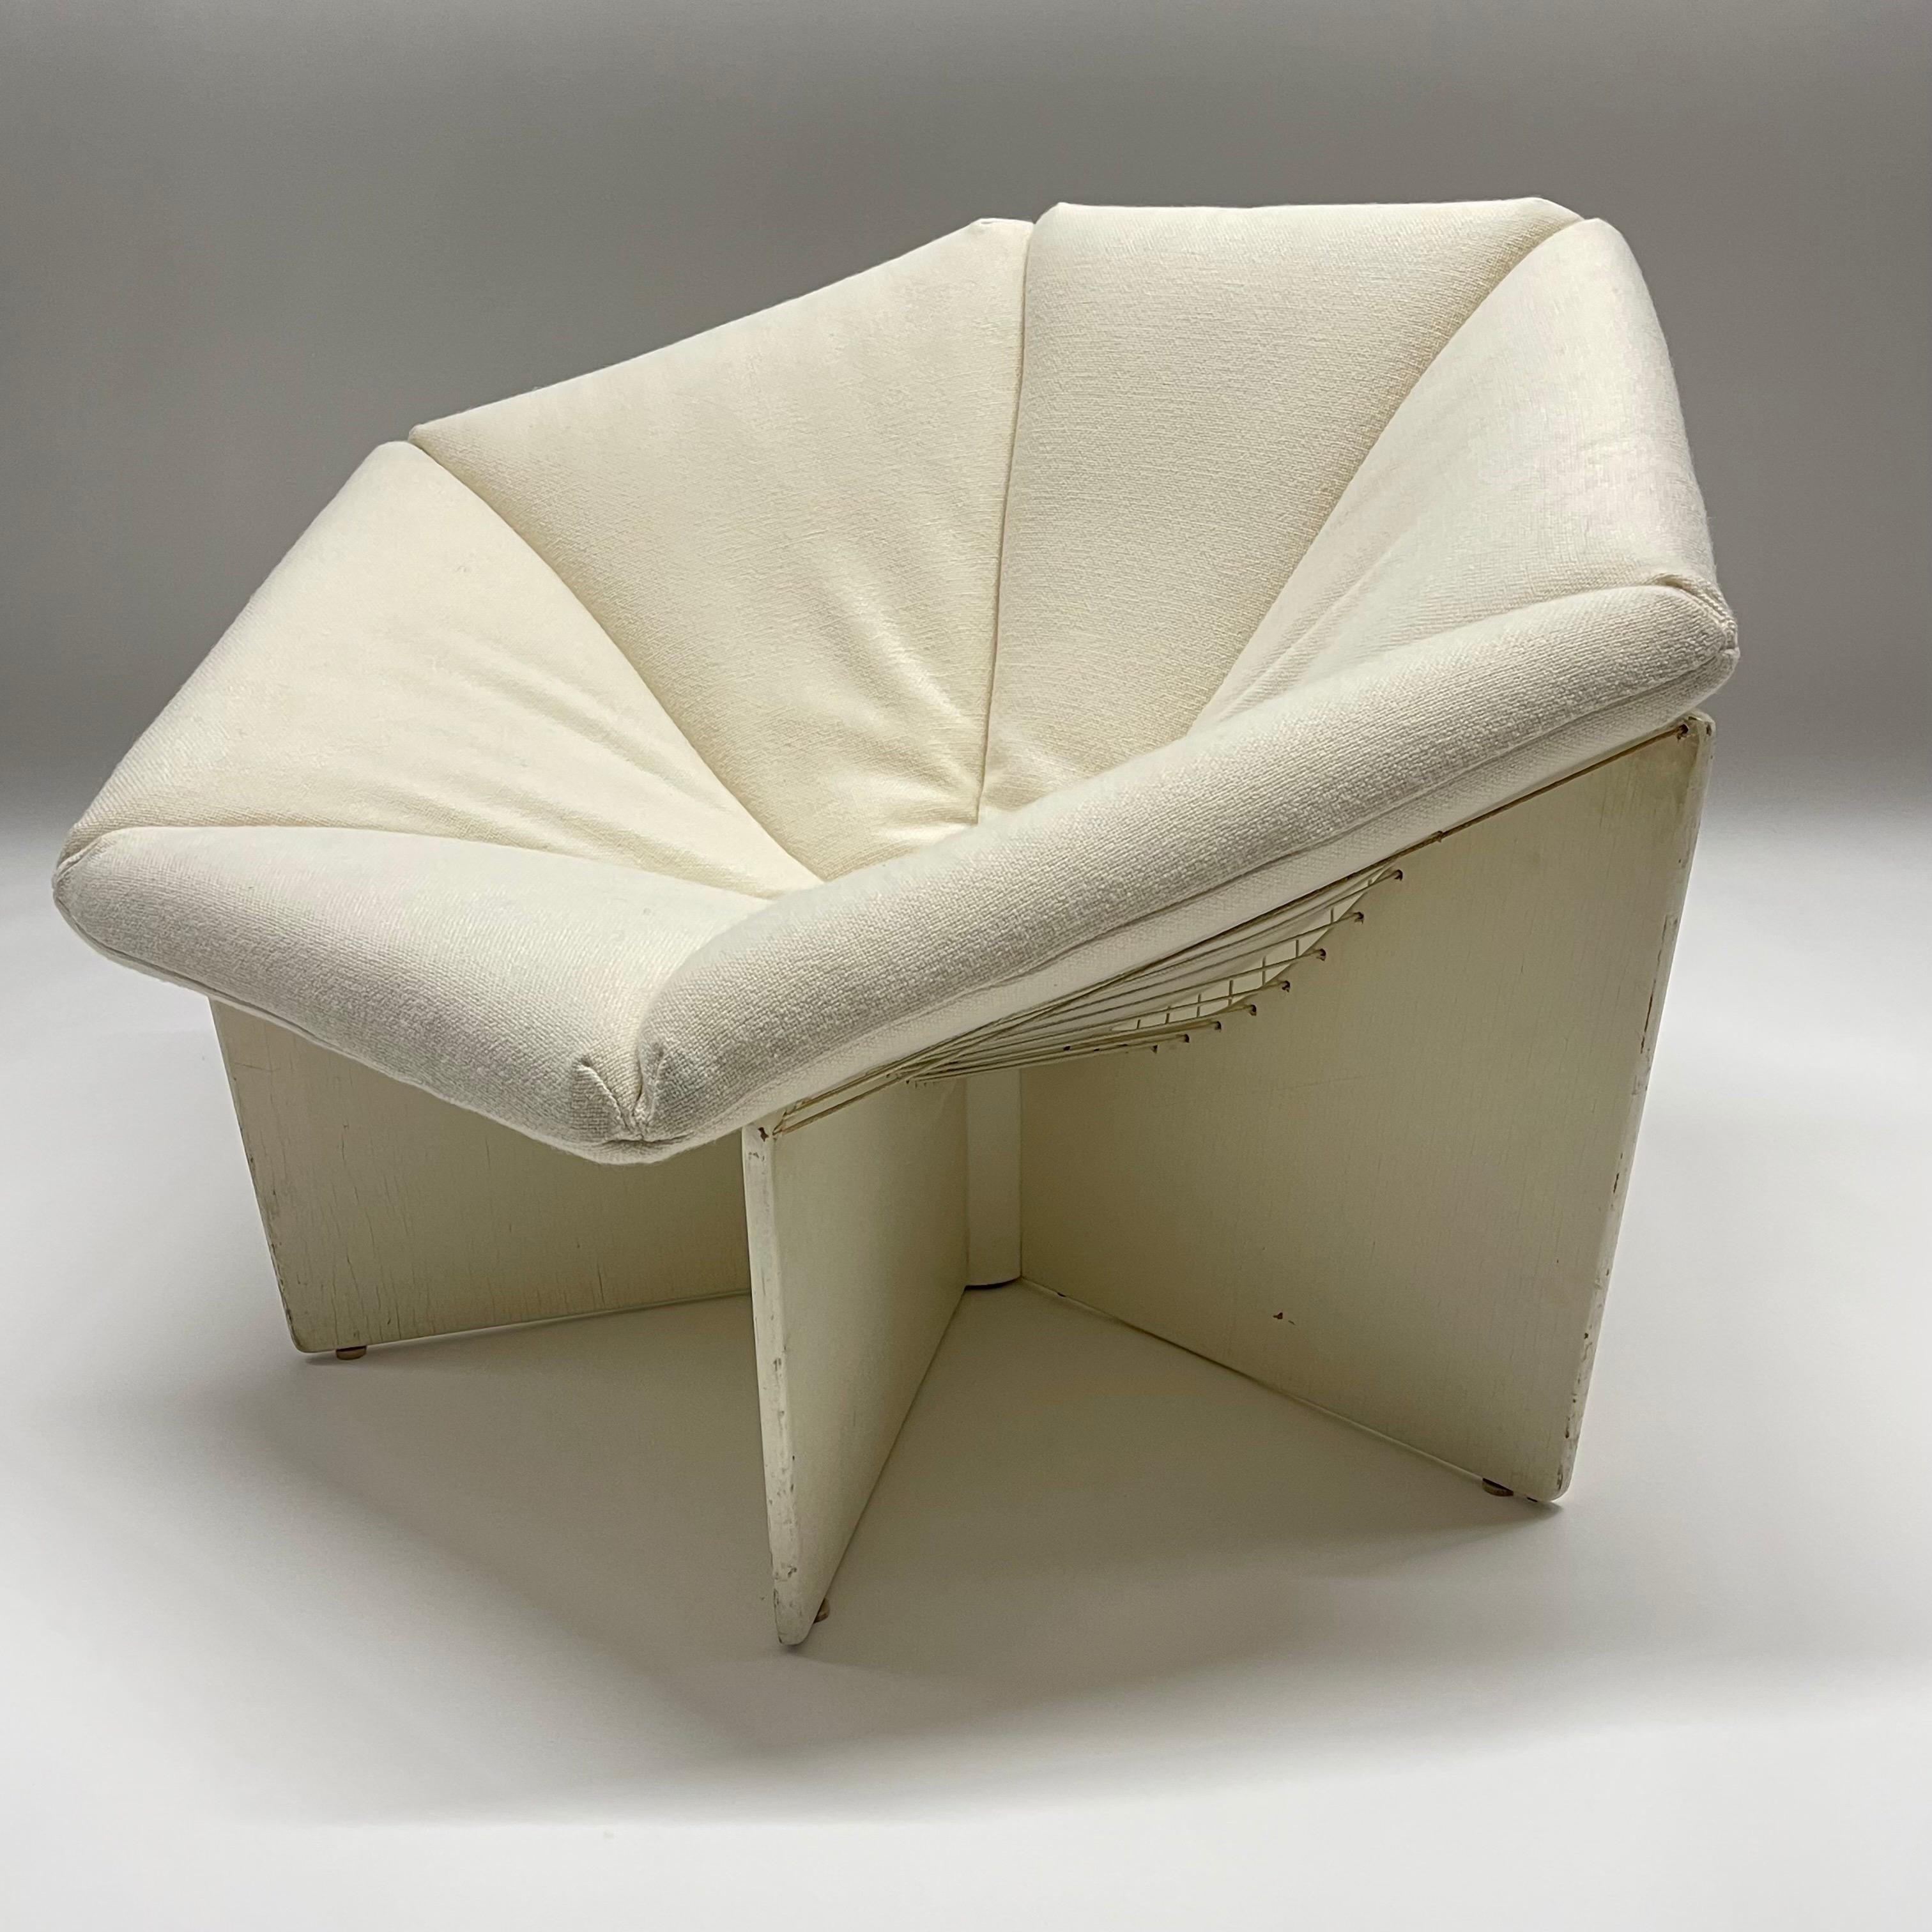 Exceptionnelle chaise longue design du 20e siècle, modèle F678, également connue sous le nom de Spider Lounge Chair. Cette pièce a été conçue par Pierre Paulin et fabriquée par Artifort Furniture Company des Pays-Bas, vers 1965. La forme hexagonale